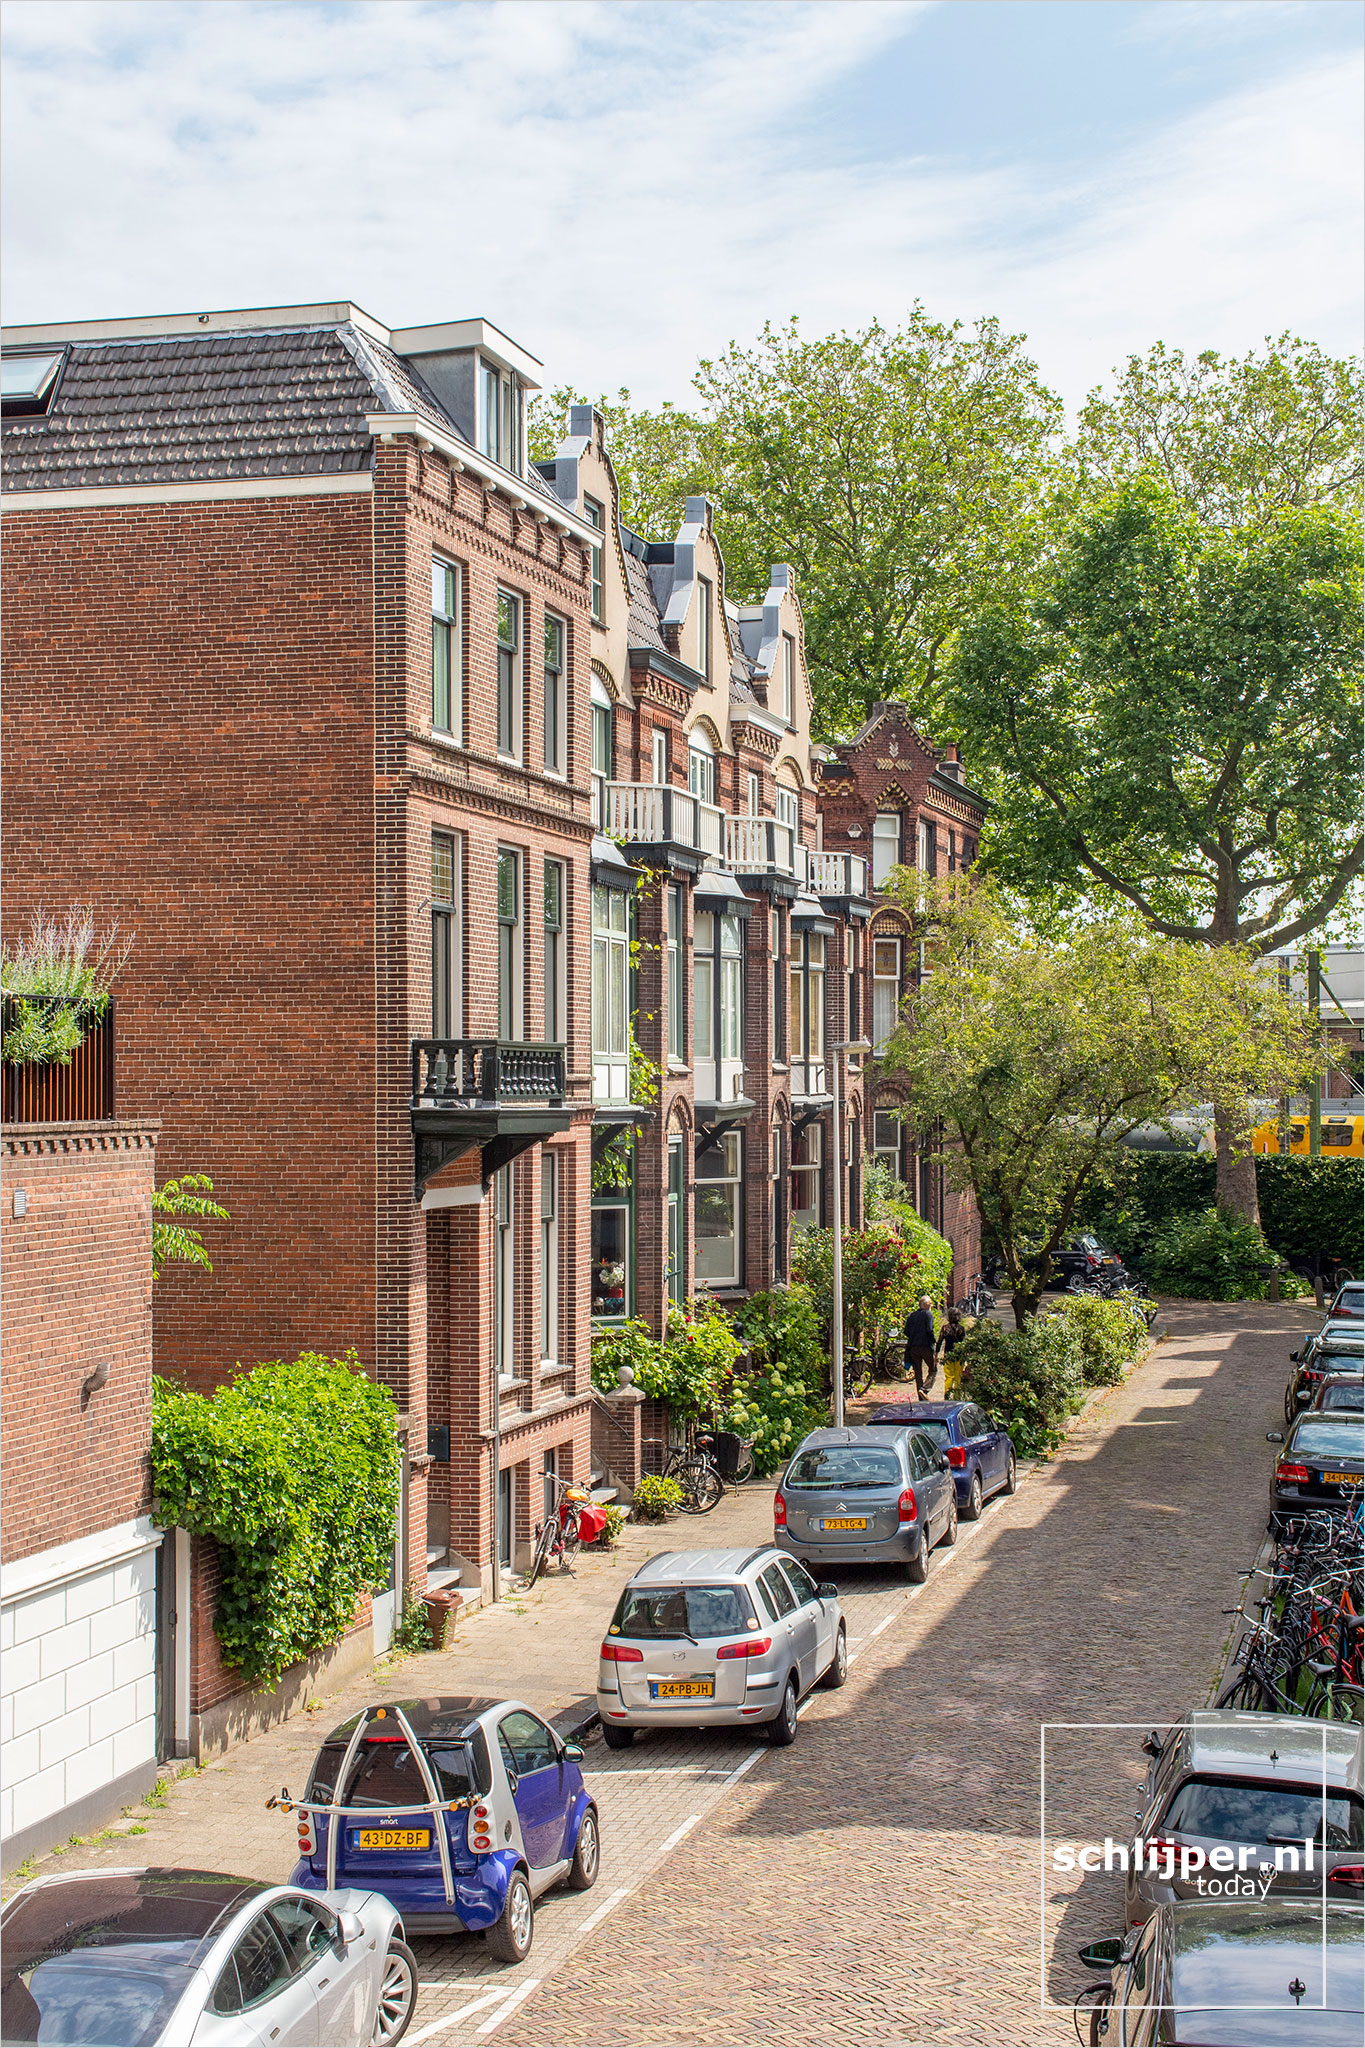 The Netherlands, Utrecht, 28 juni 2021